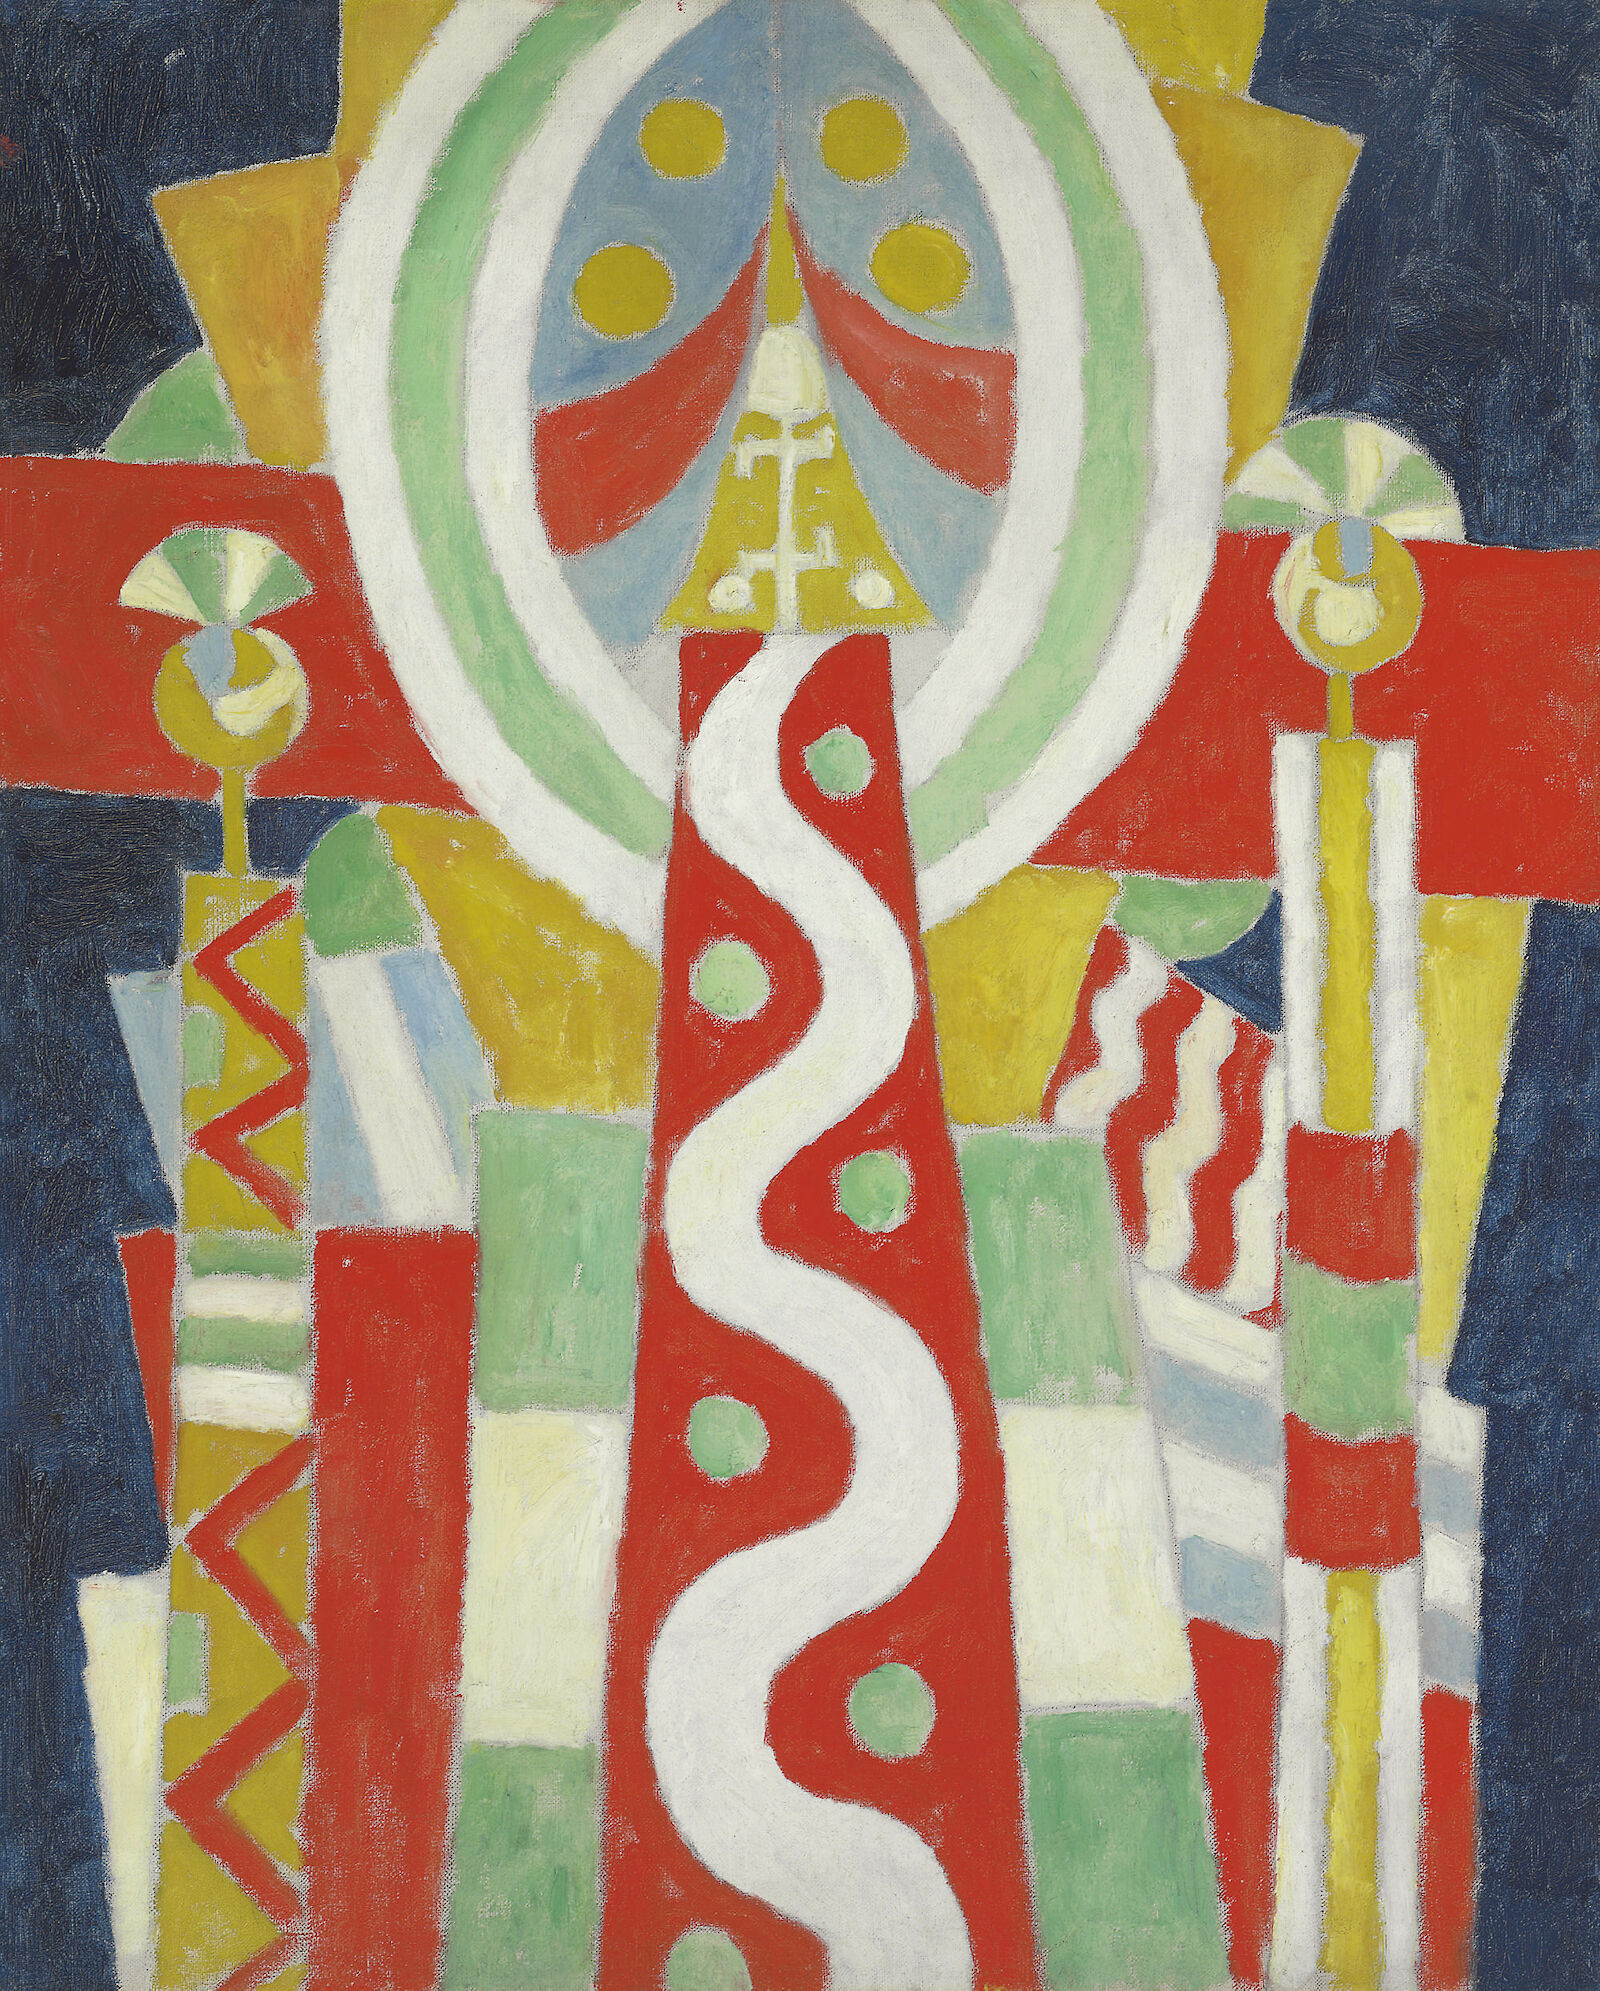 Светионик by Marsden Hartley - 1915. - 101,6 x 81,3 cm 